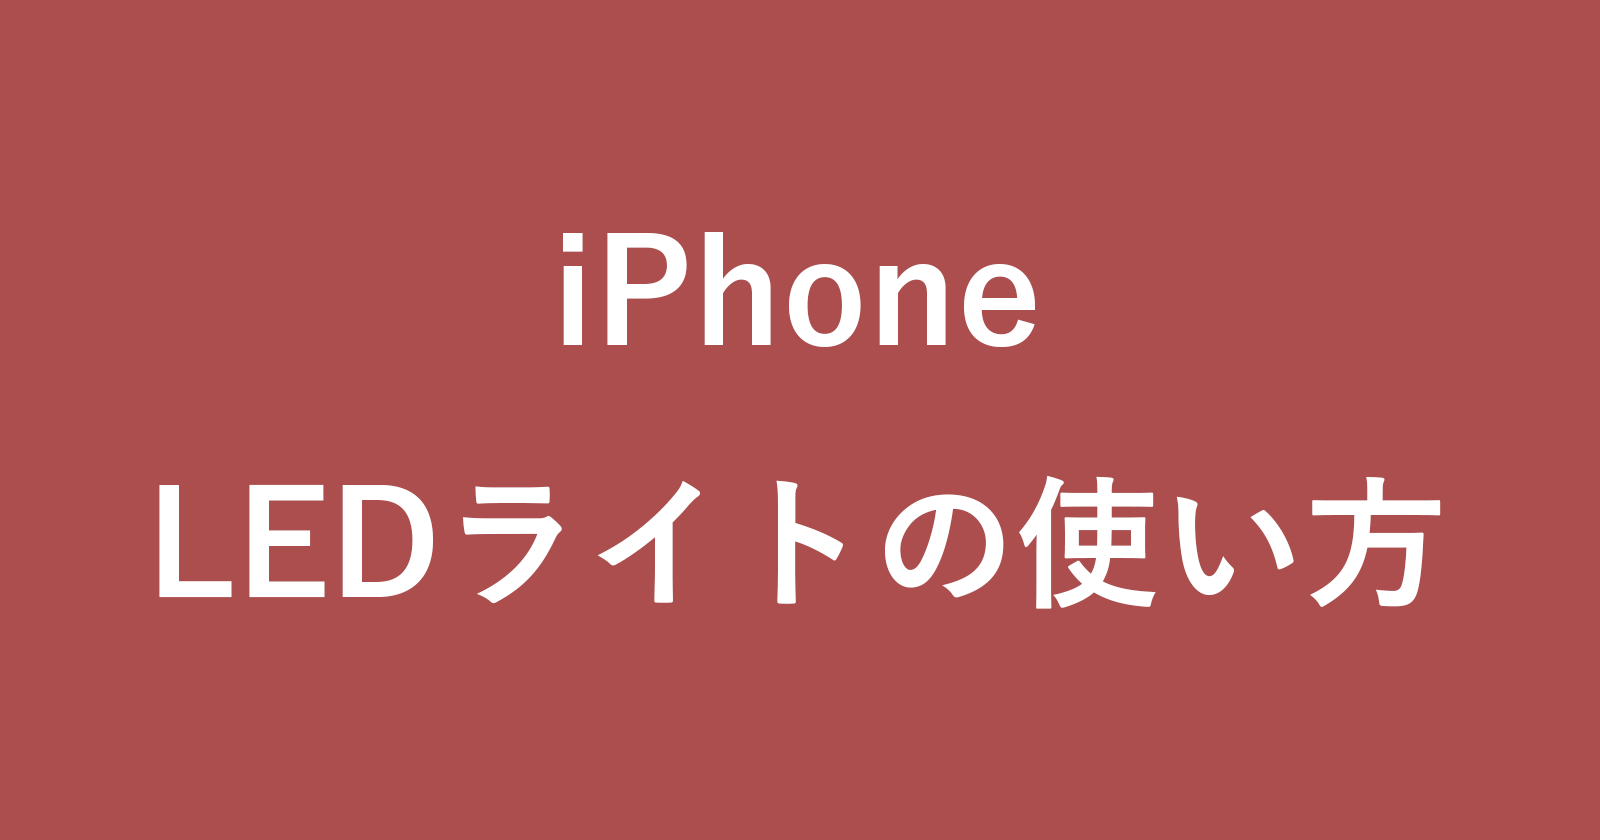 iphone led